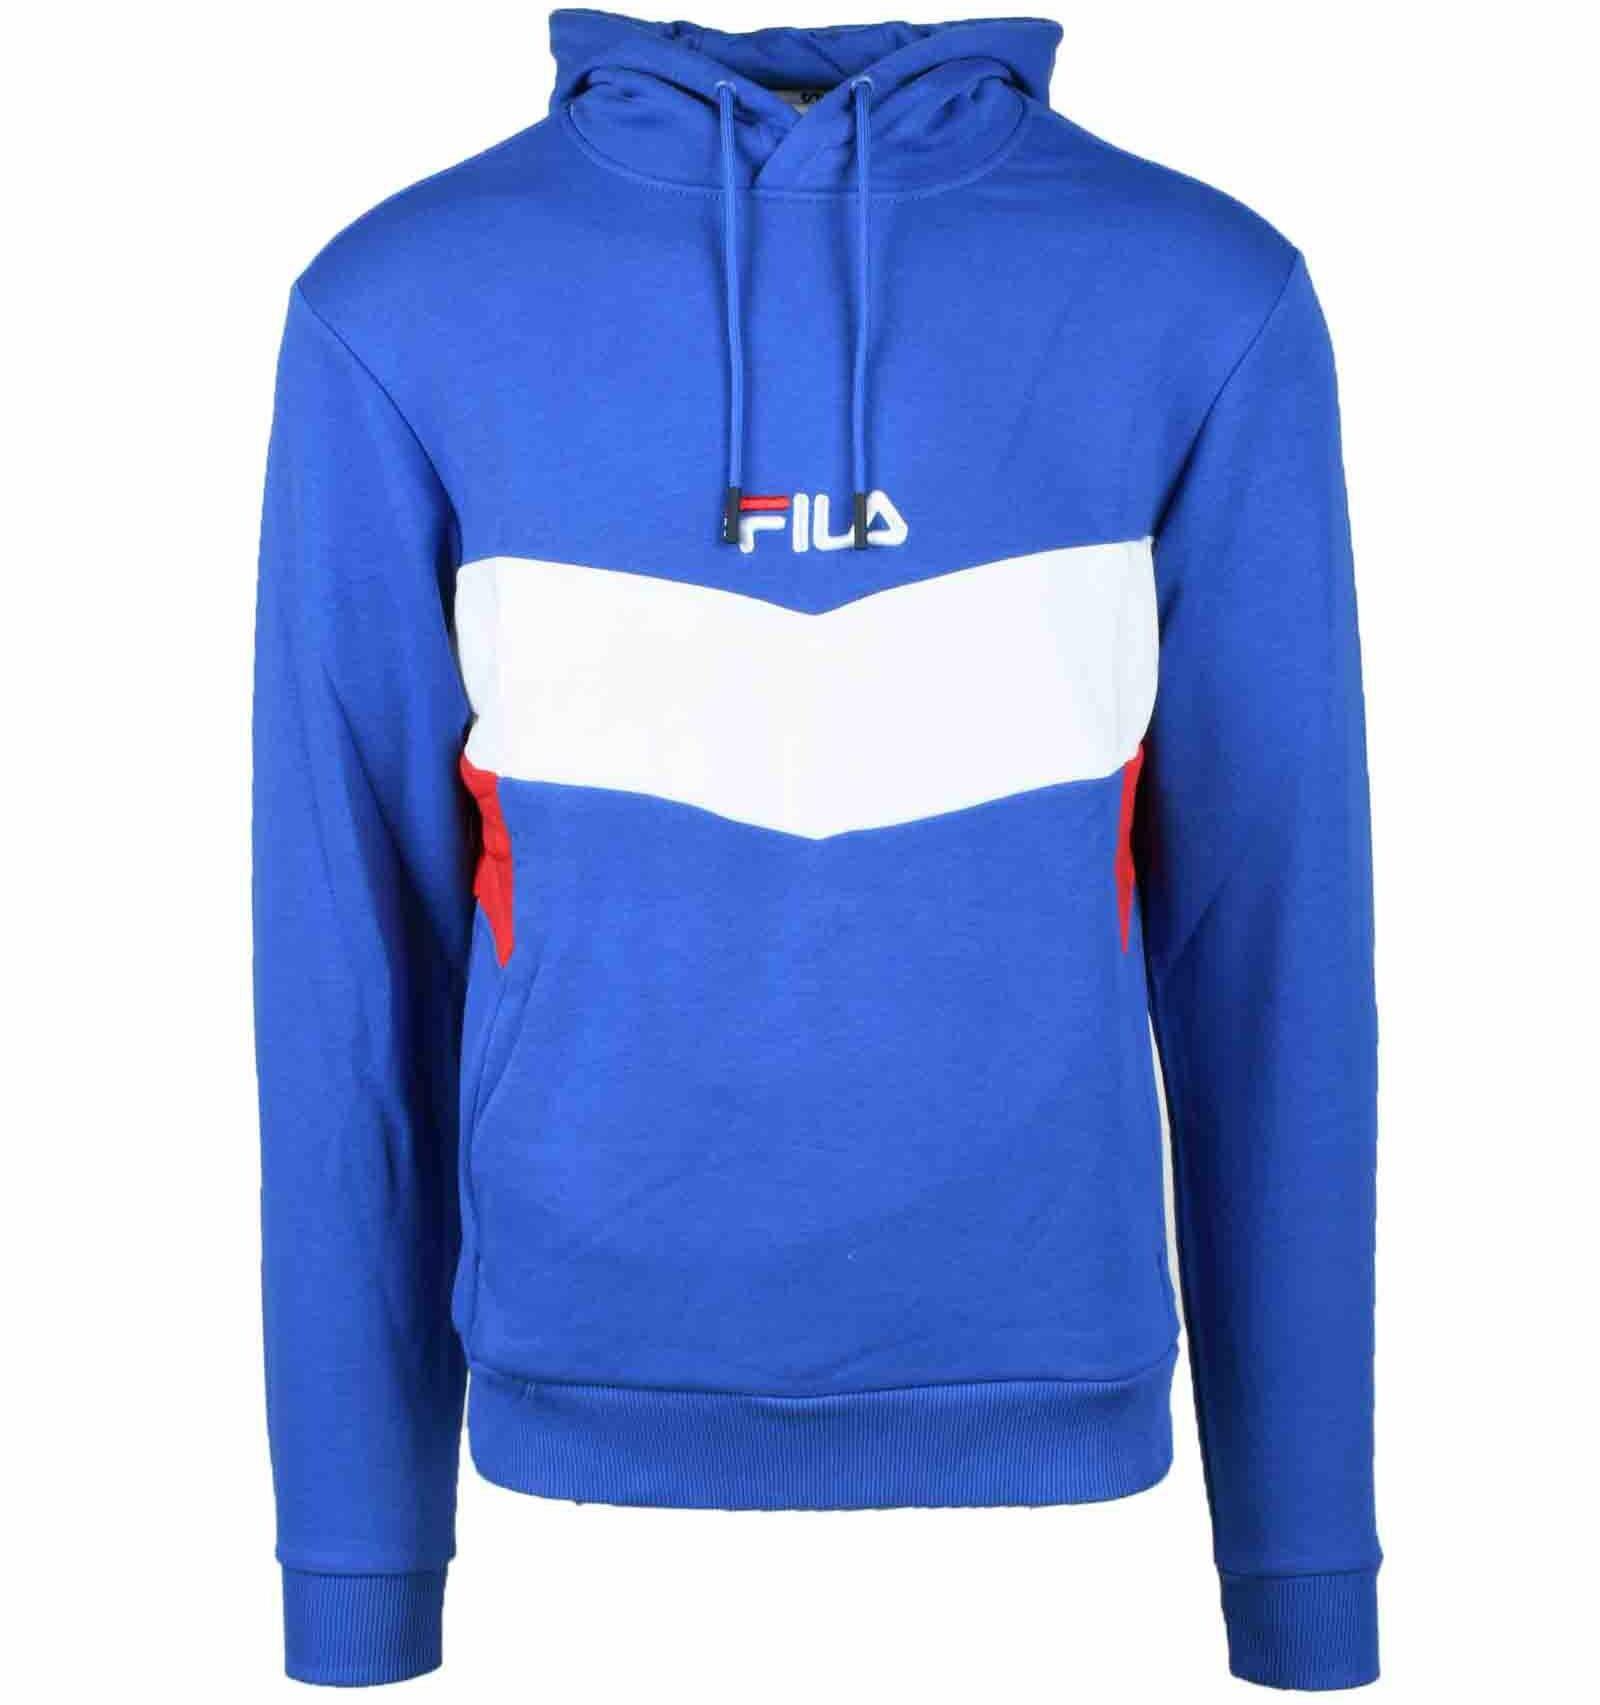 FILA Men's / Blue Sweatshirt S FORZIERI